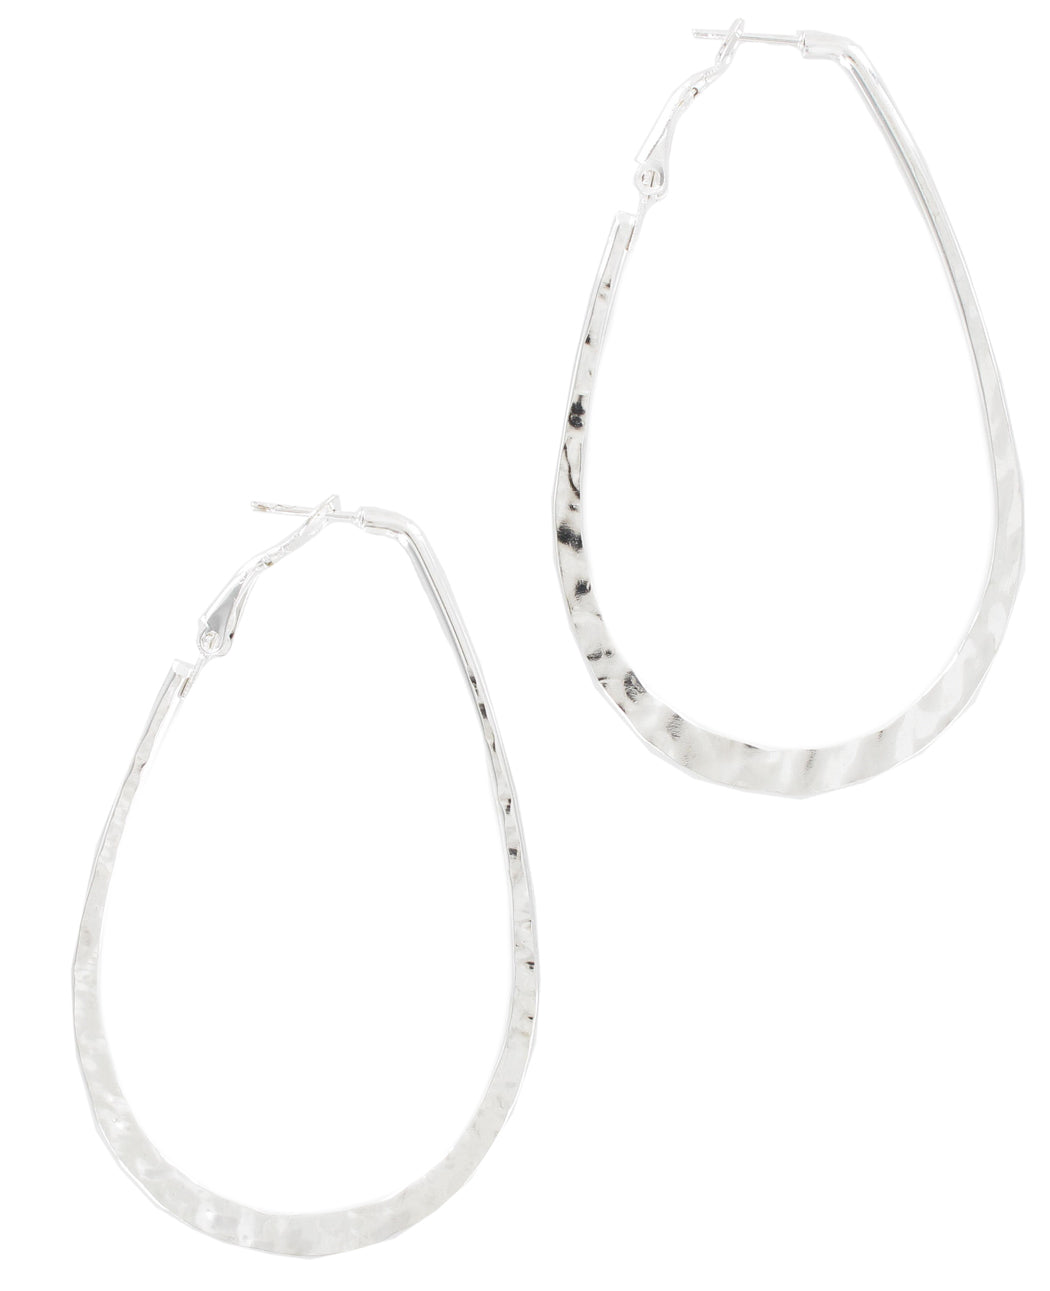 Ky & Co Pierced Earrings Hoop Loop Hammered USA 2 3/4" - Silver Tone